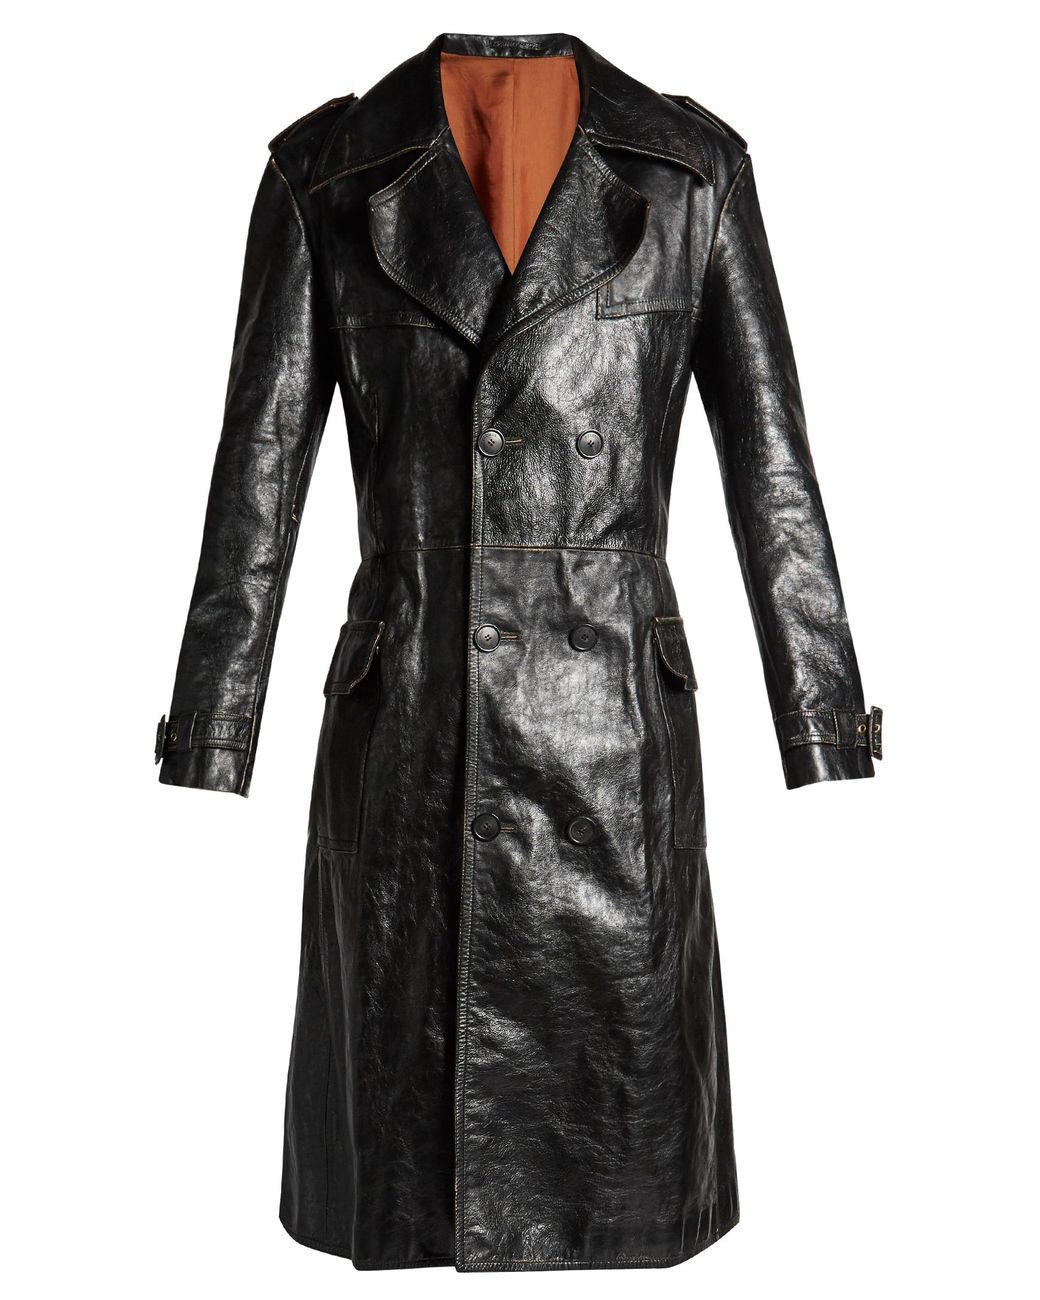 Balenciaga Hybrid Leather Trench Coat in Black | Lyst Canada